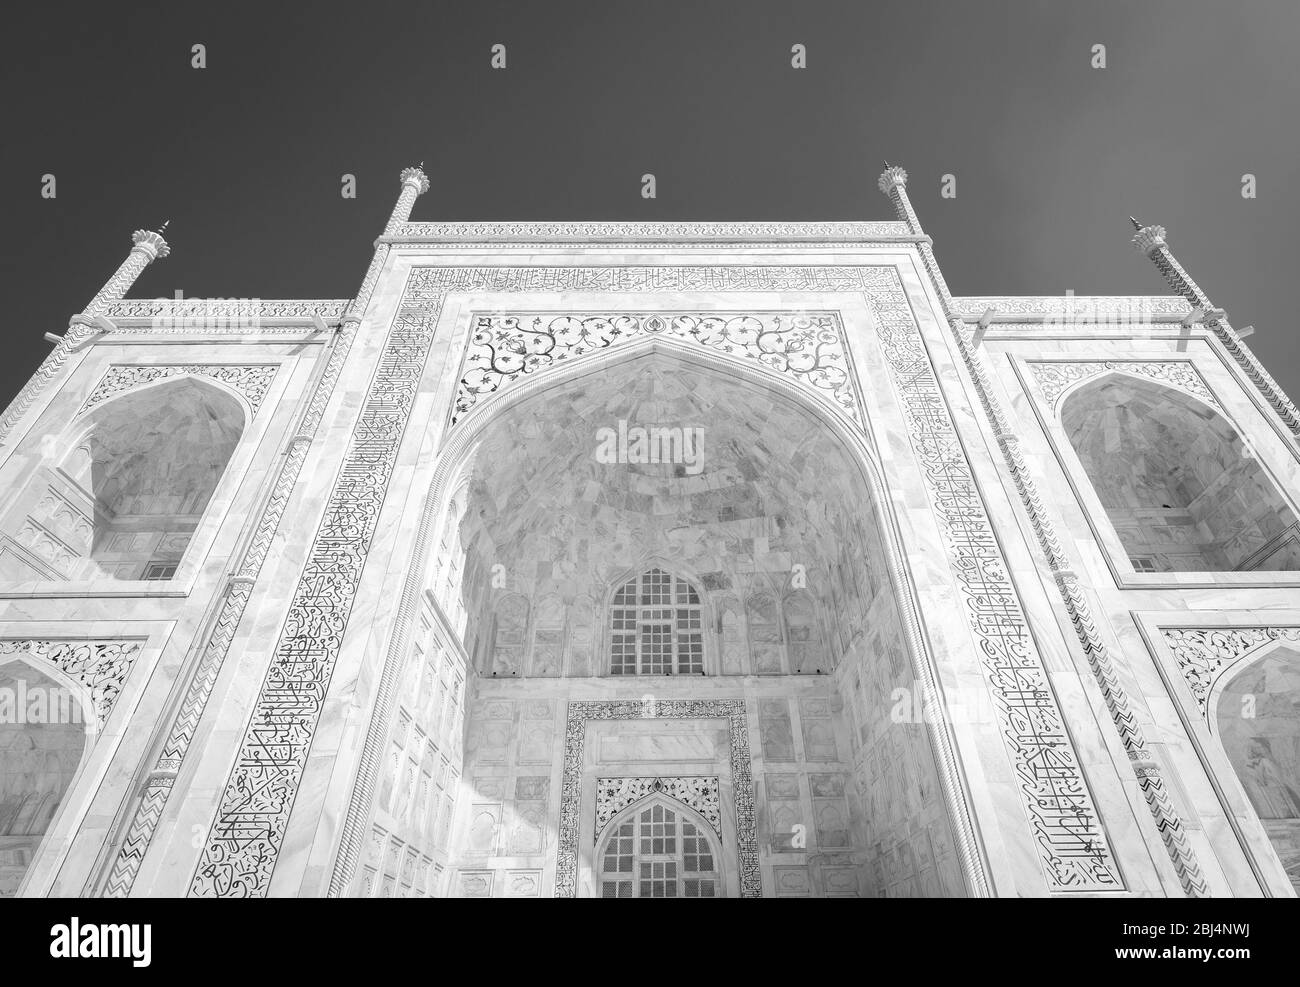 Détails de la façade dans le marbre blanc du mausolée Taj Mahal construit en 1643 par l'empereur Mughal Shah Jahan pour abriter la tombe de sa femme Mumtaz Mahal Banque D'Images